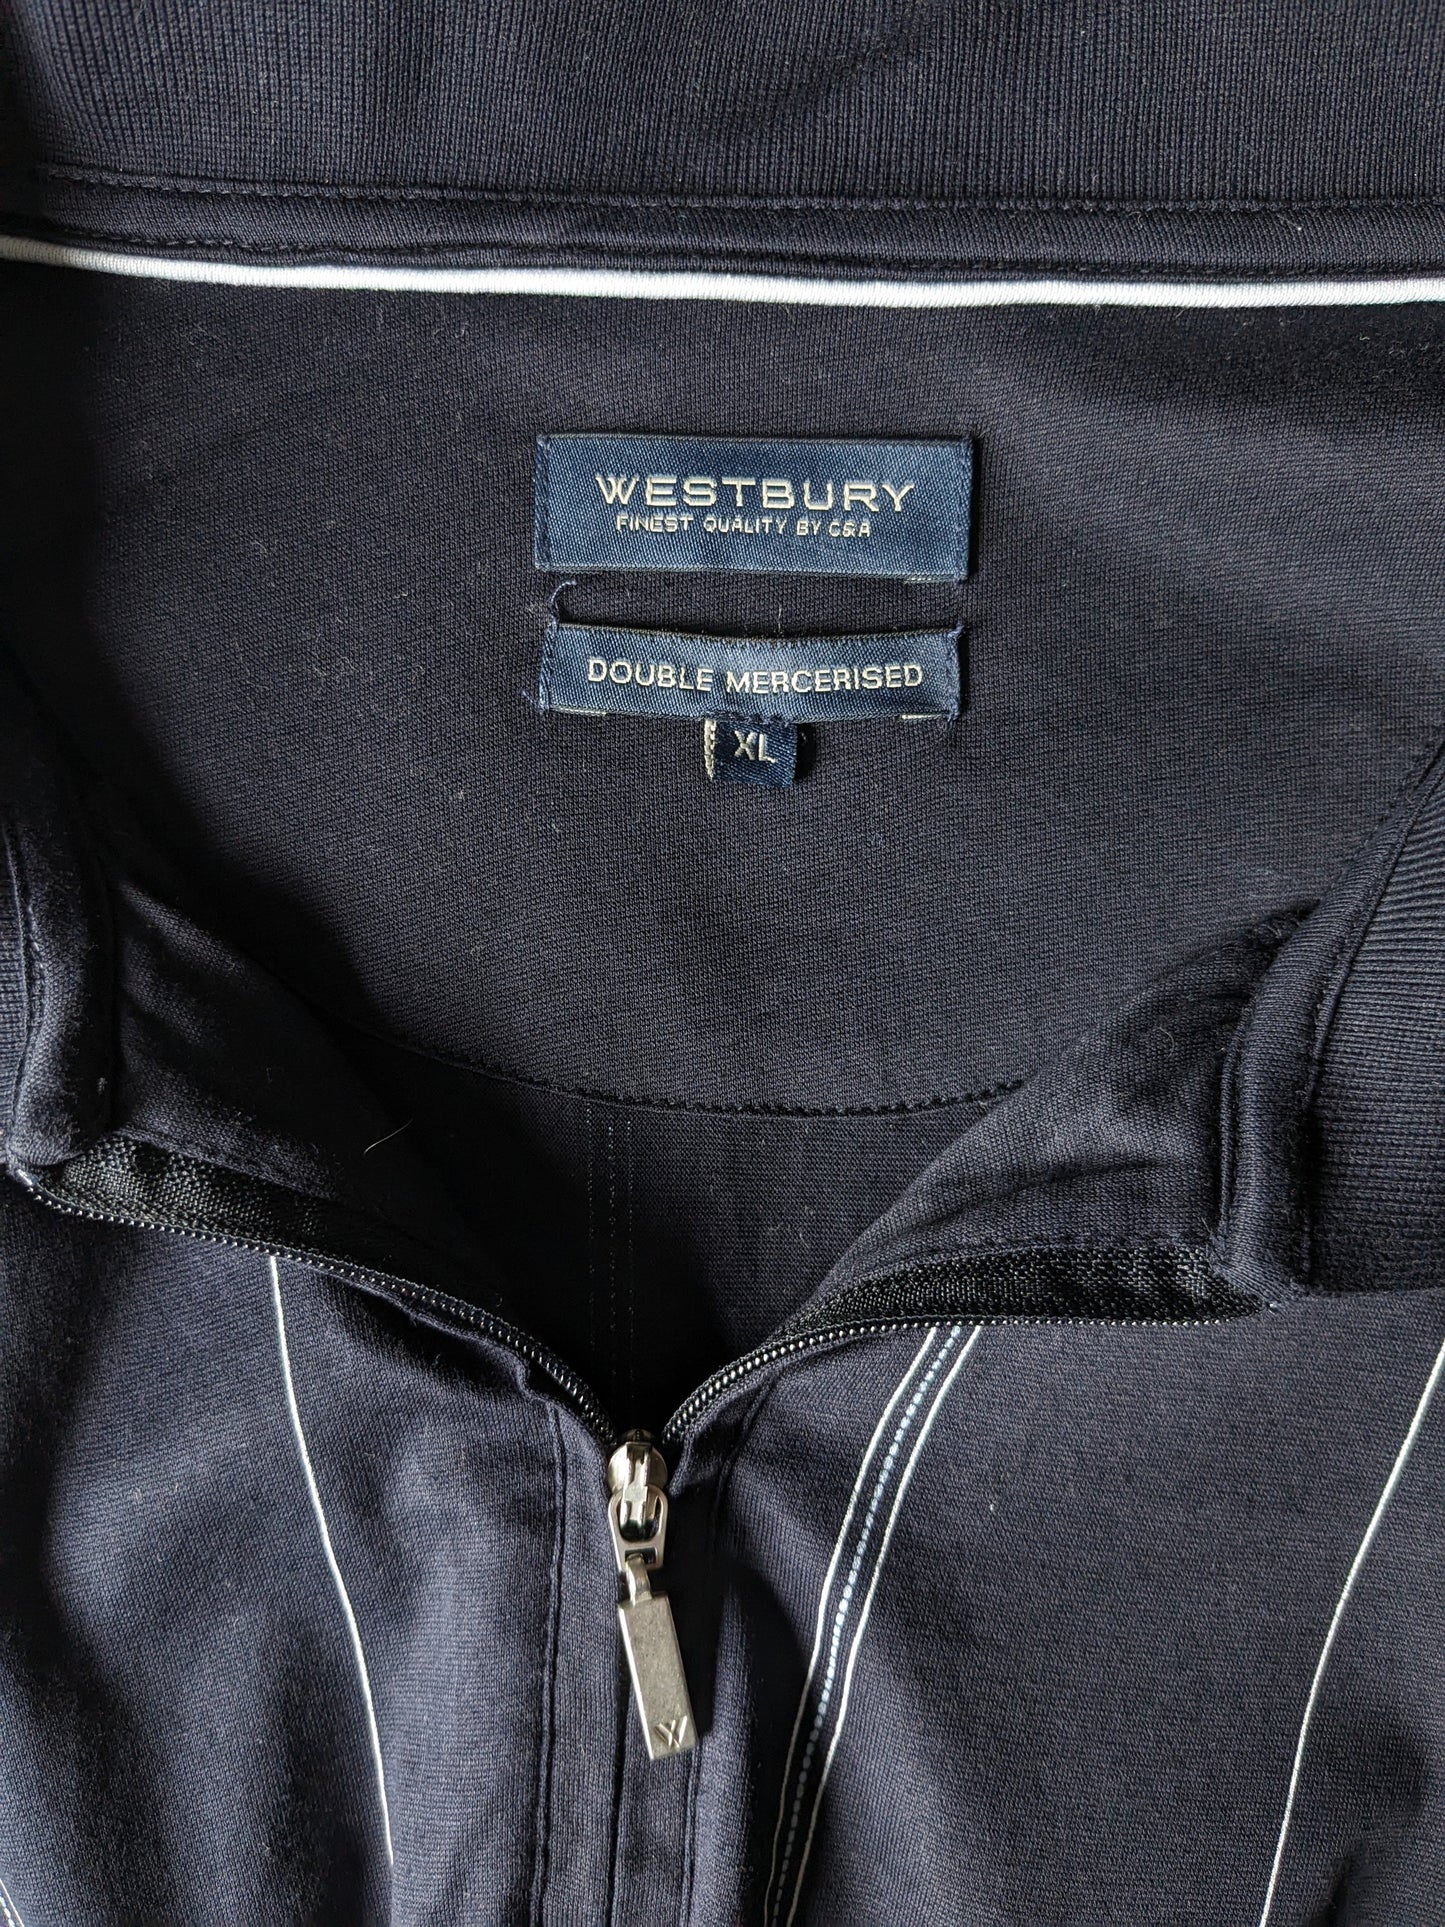 Westbury Vintage polo met elastische band en rits. Donker Blauw Wit gestreept. Maat XL.